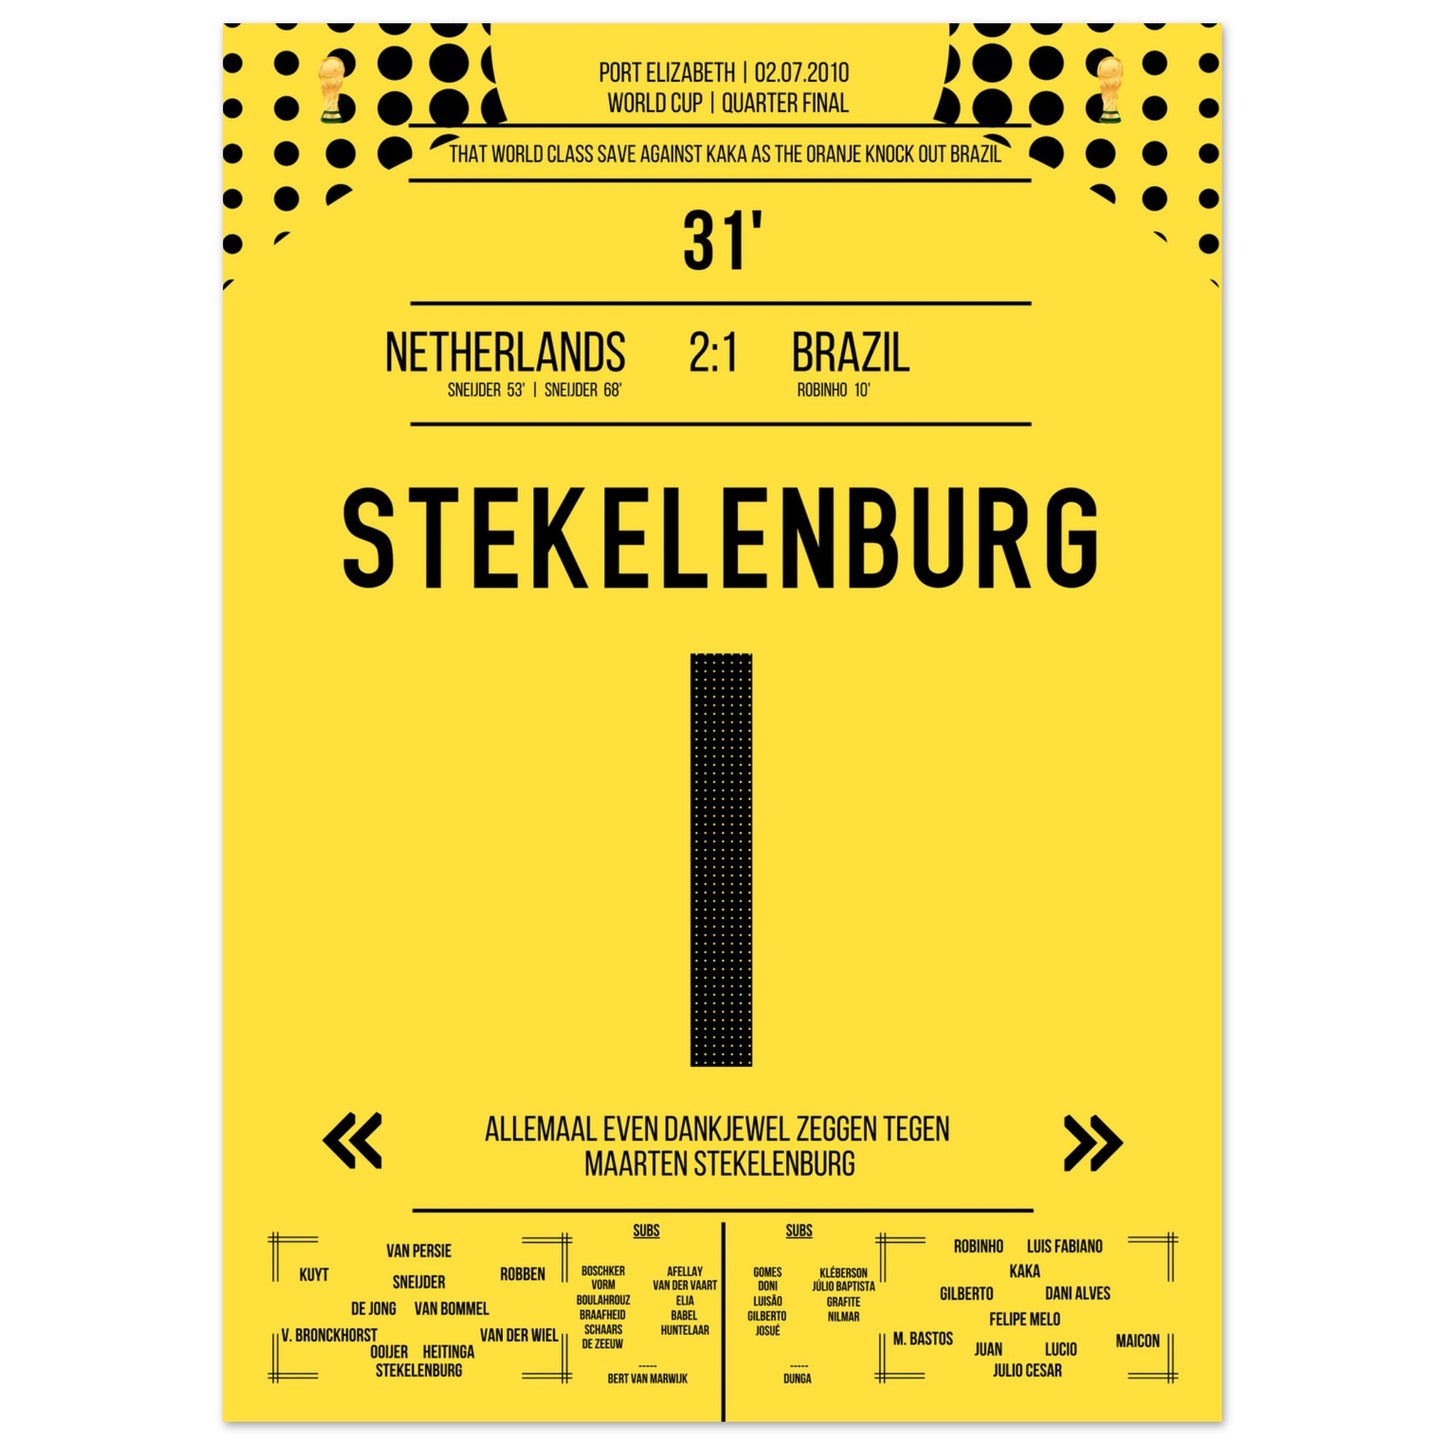 Stekelenburg's Weltklasse Aktion gegen Kaka bei der WM 2010 Kommentar-Version 50x70-cm-20x28-Ohne-Rahmen